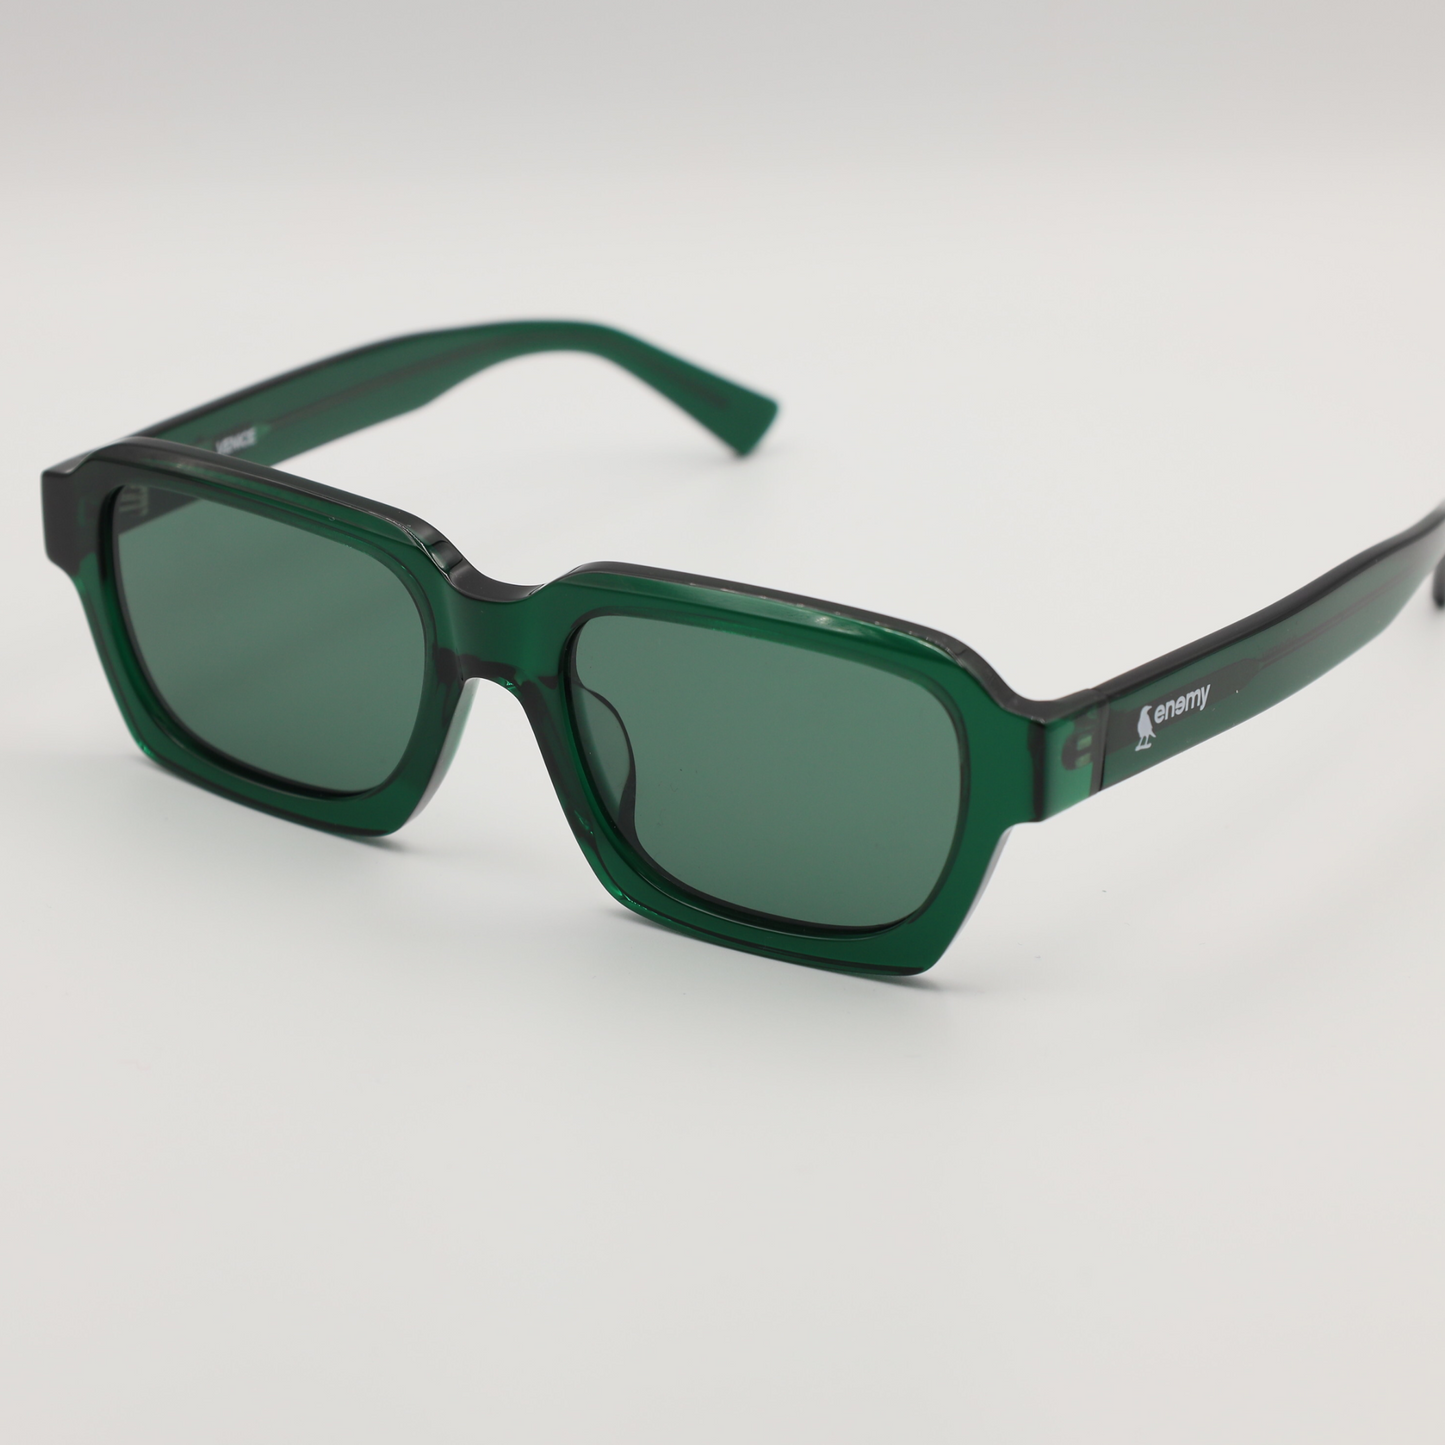 Venice Green Sunglasses